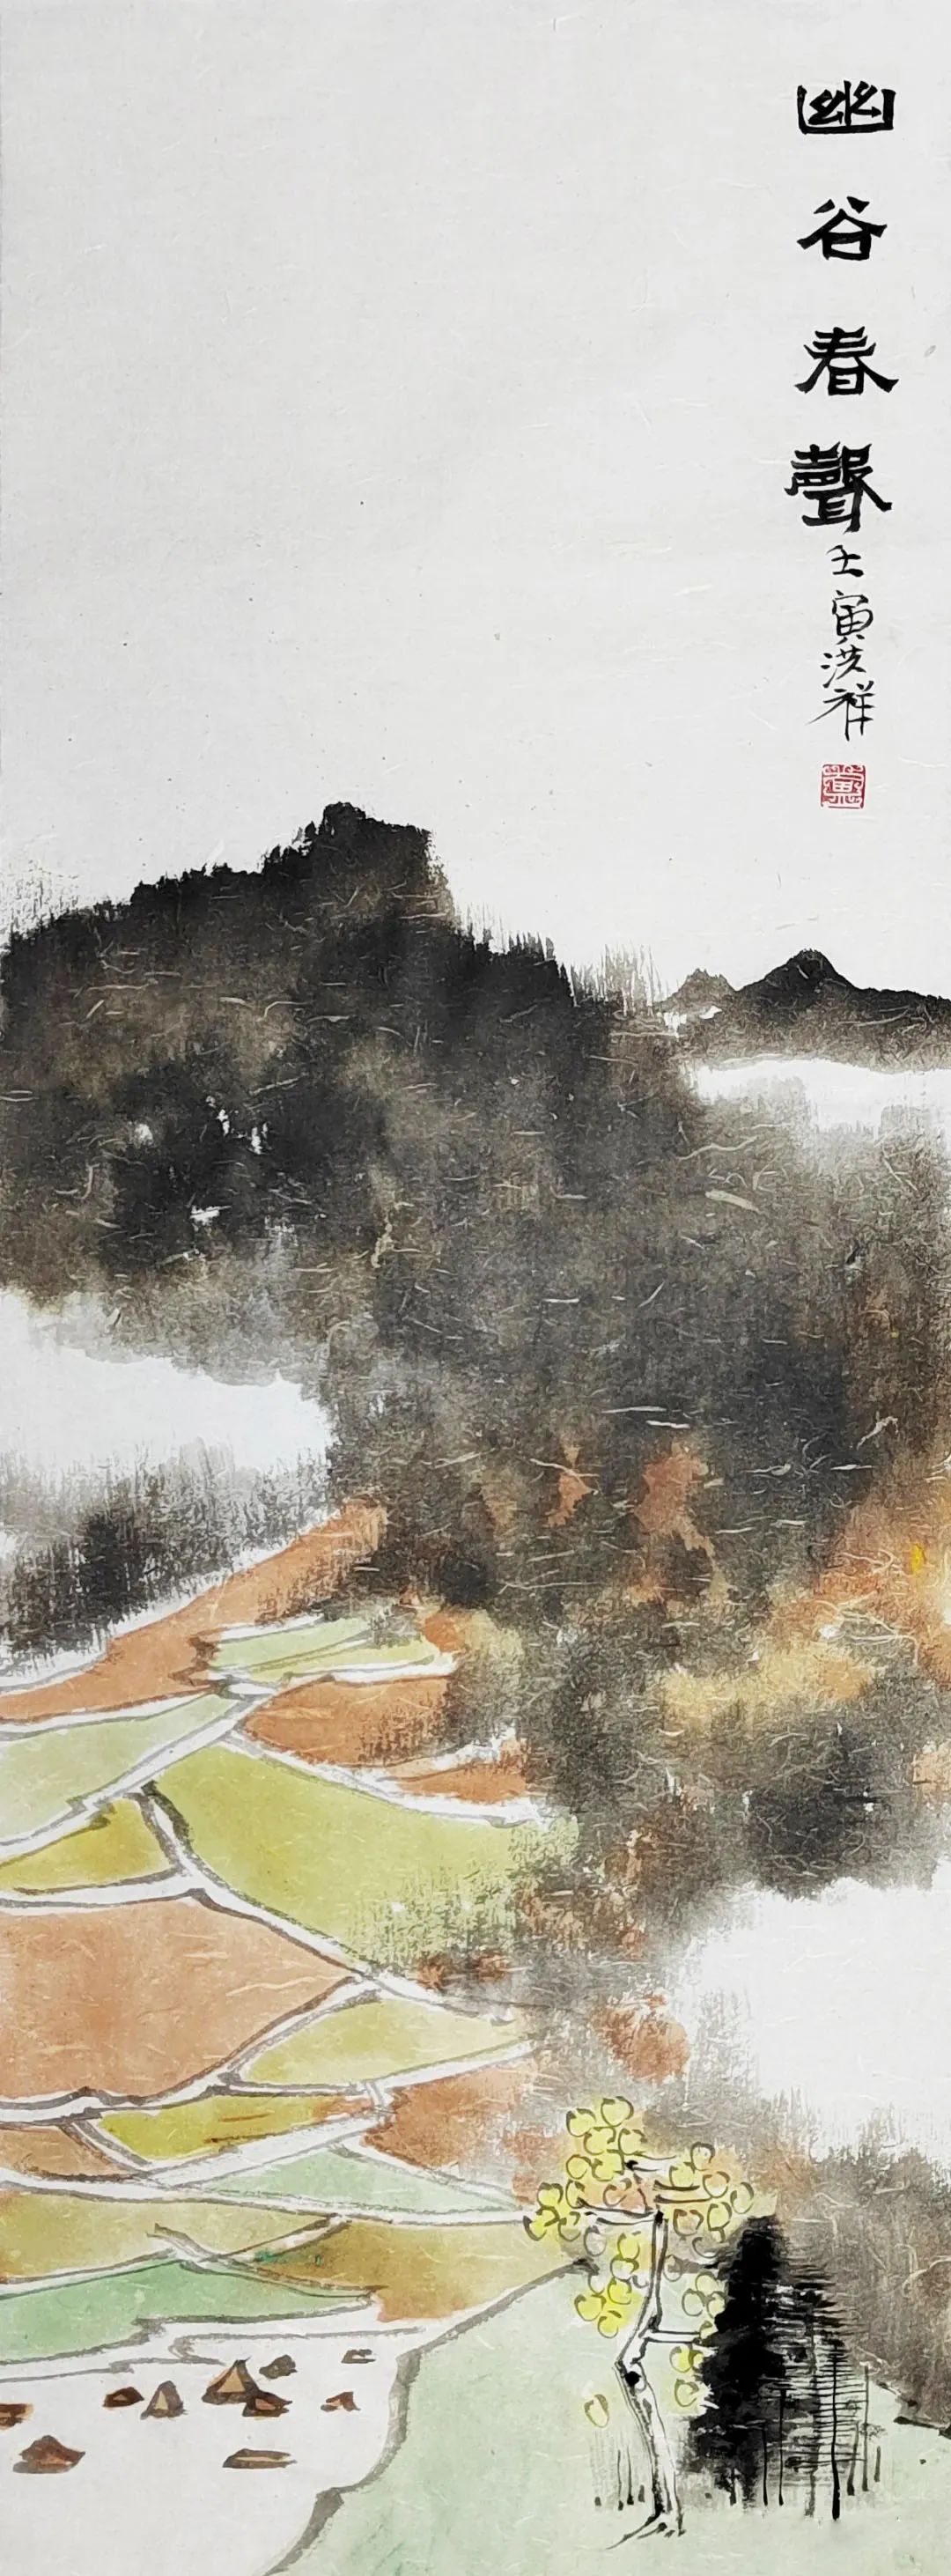 传统笔墨中的新山水——评著名画家卢洪祥山水画的生机与美感